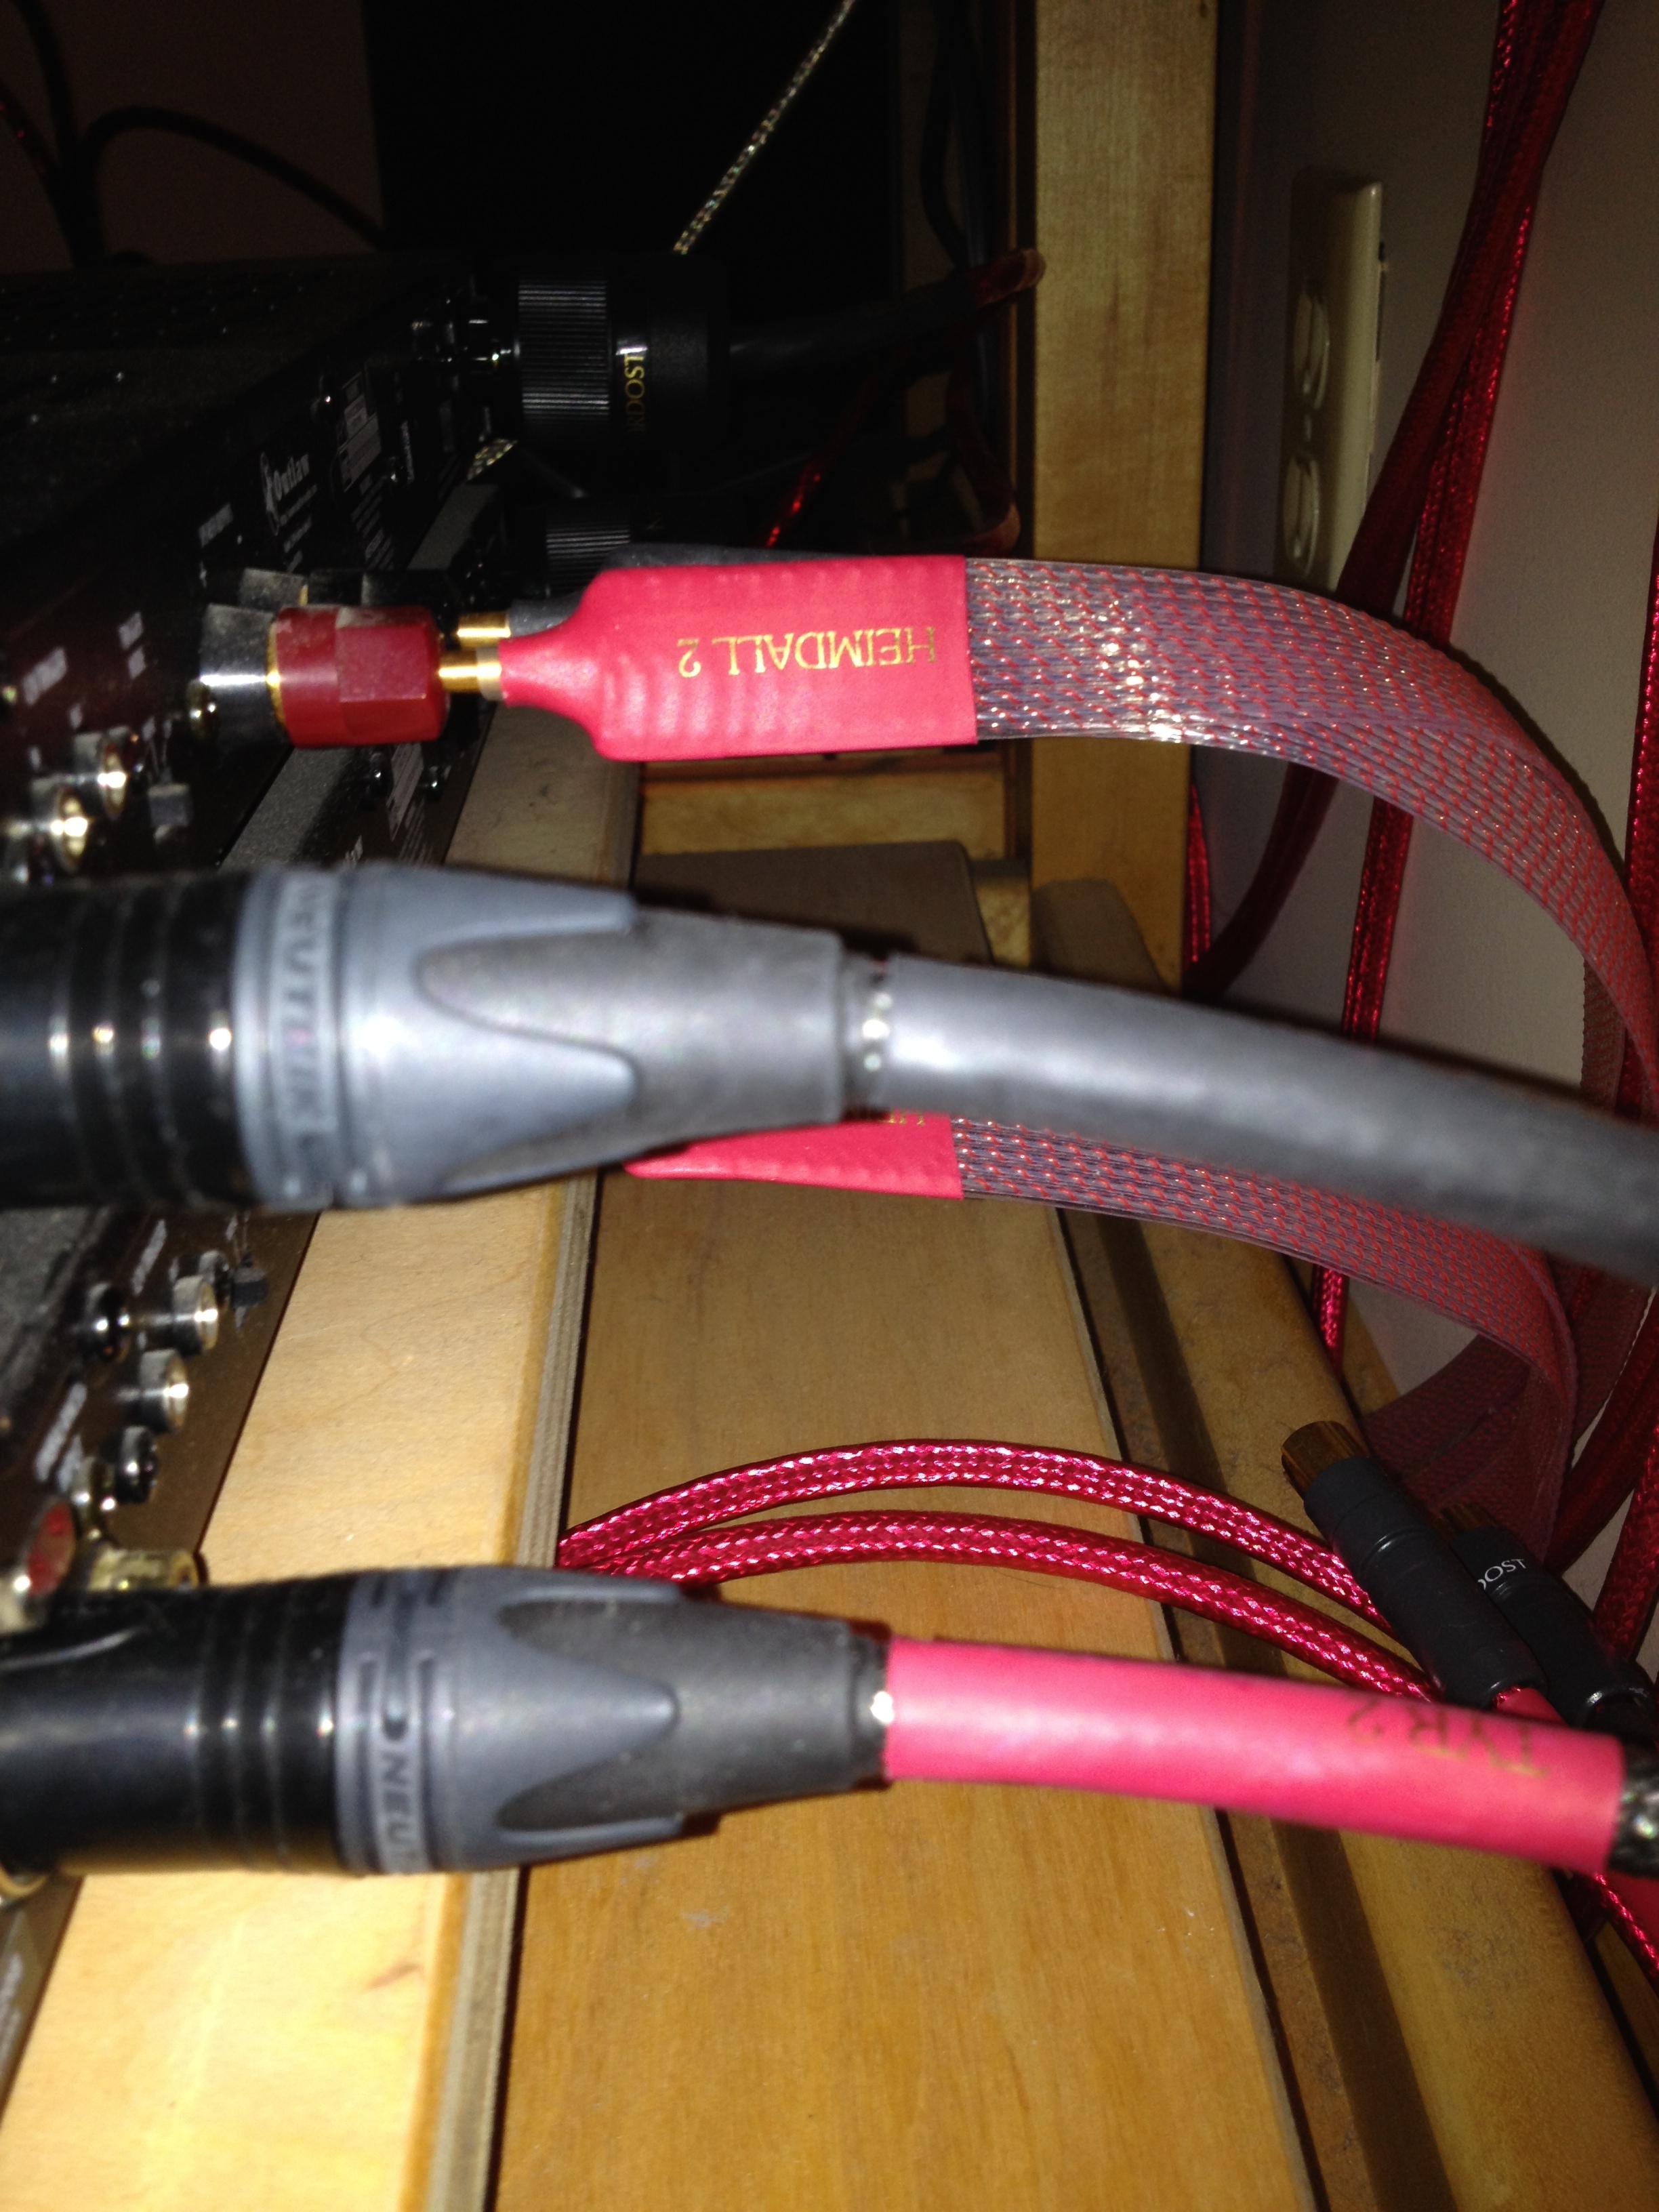 Amplifier Cables